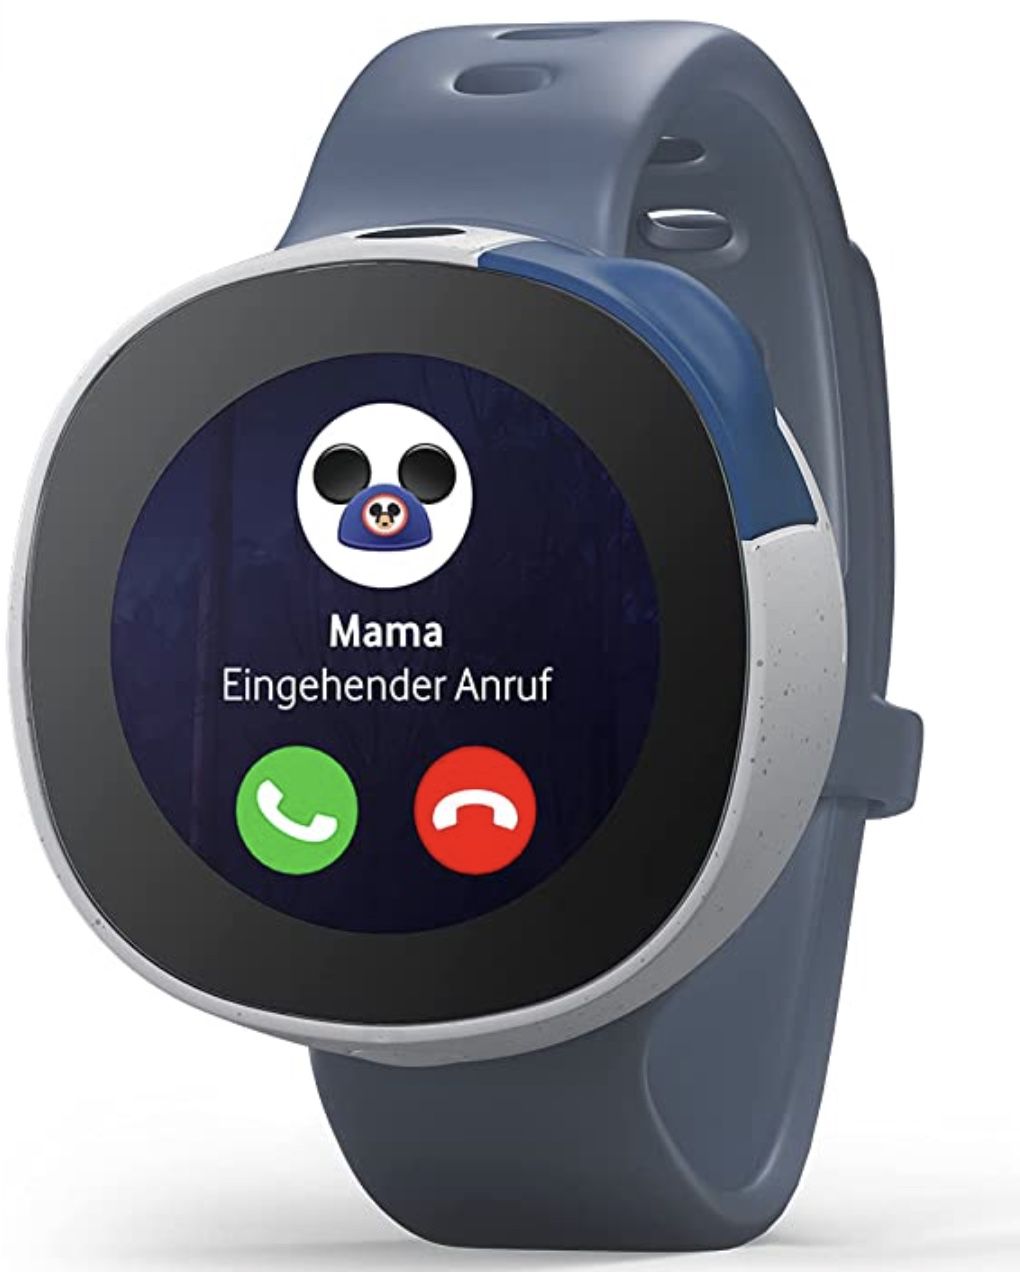 Neo Kinder Smartwatch mit GPS Tracking & Disney Motiven für 99,90€ (statt 140€) oder mit Smart Tarif für 159,90€